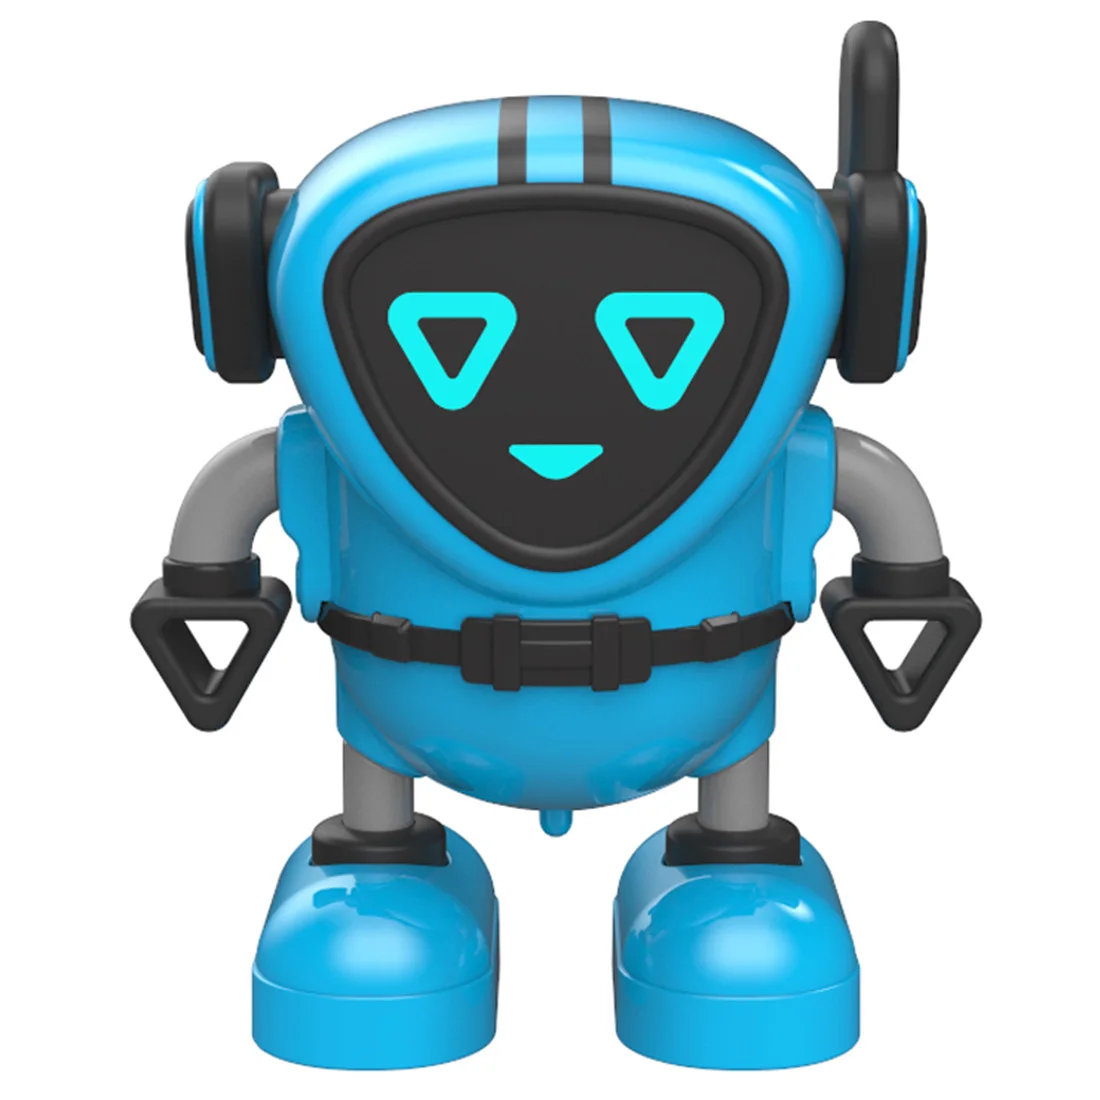 Обучение маленьких детей гироскоп робот несколько геймплей робот DIY инерционный робот-Паззл игрушка-синий - Цвет: 2